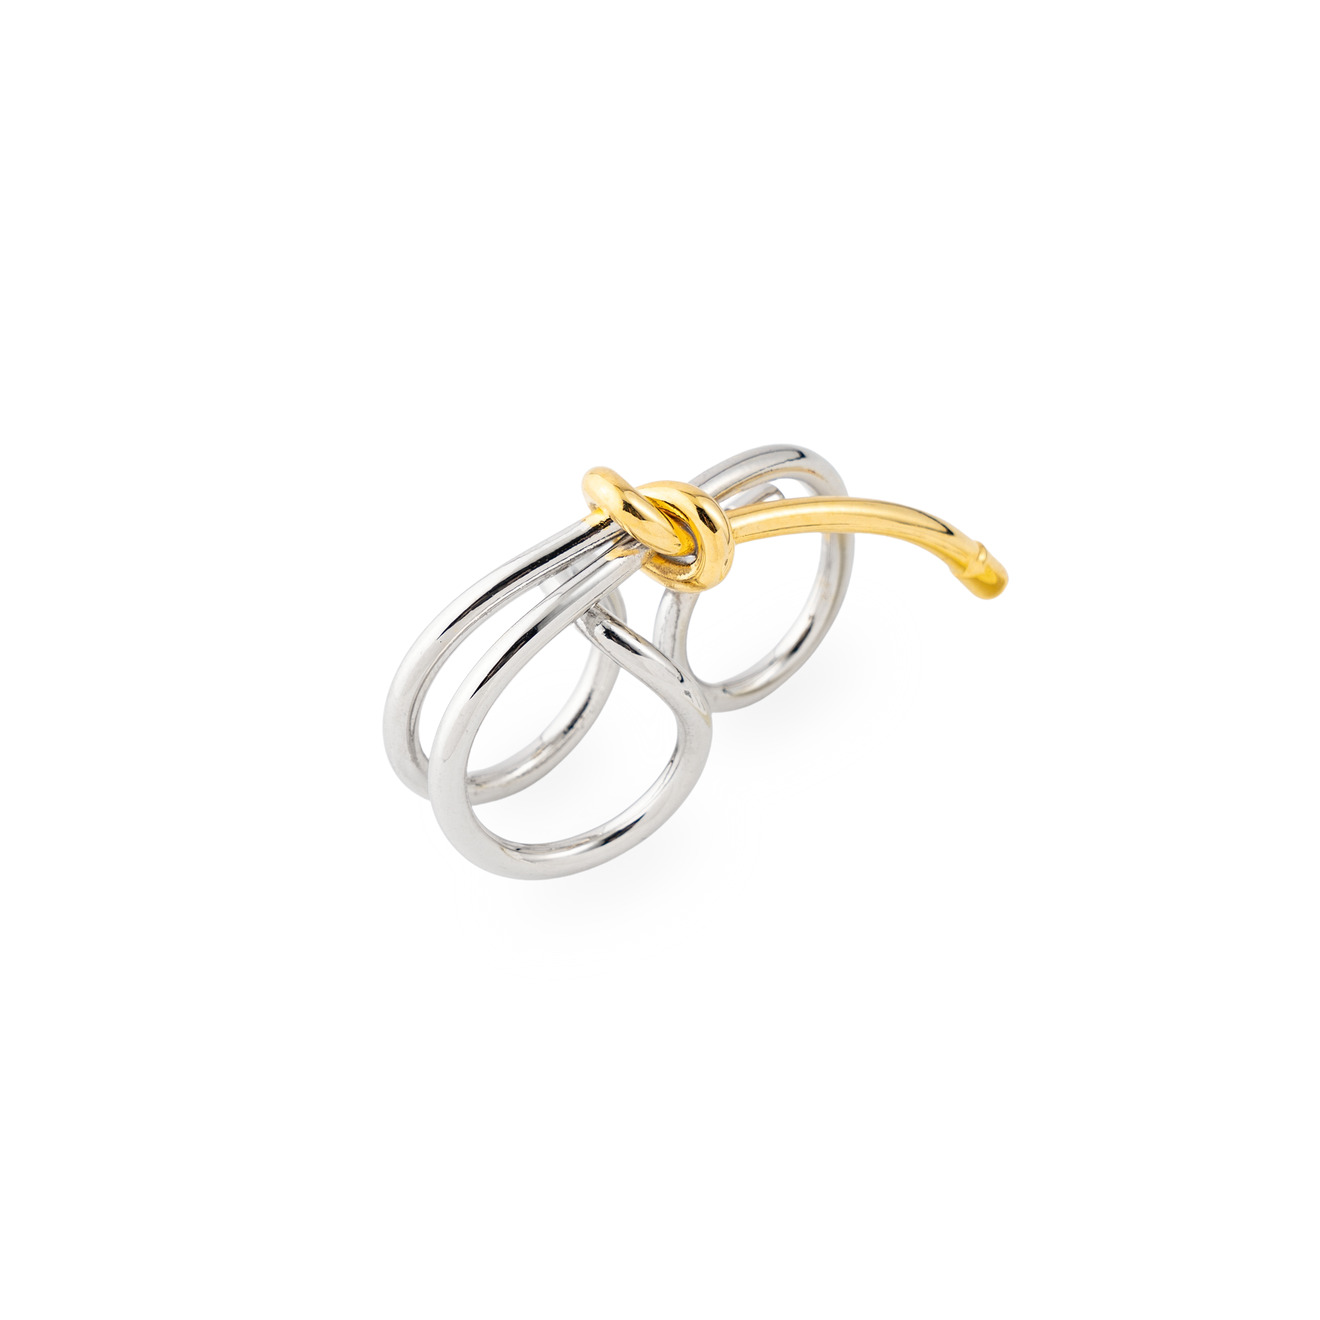 Aloud Биколорное кольцо «Узел» lisa smith биколорное кольцо с кисточкой из цепочек